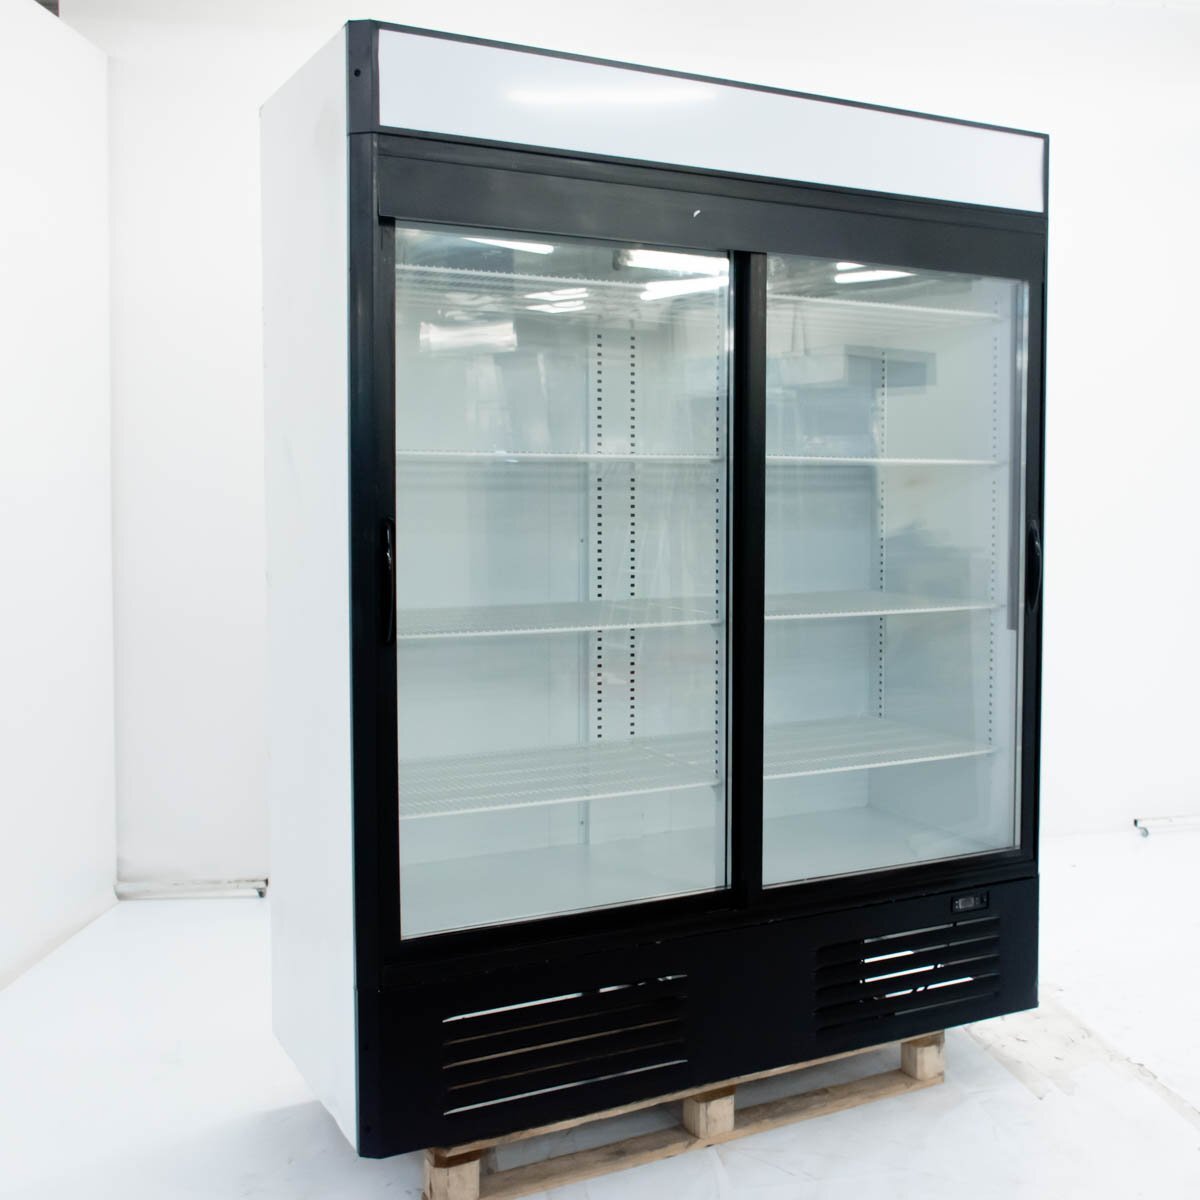 шкаф холодильный марихолодмаш капри 0 5 м